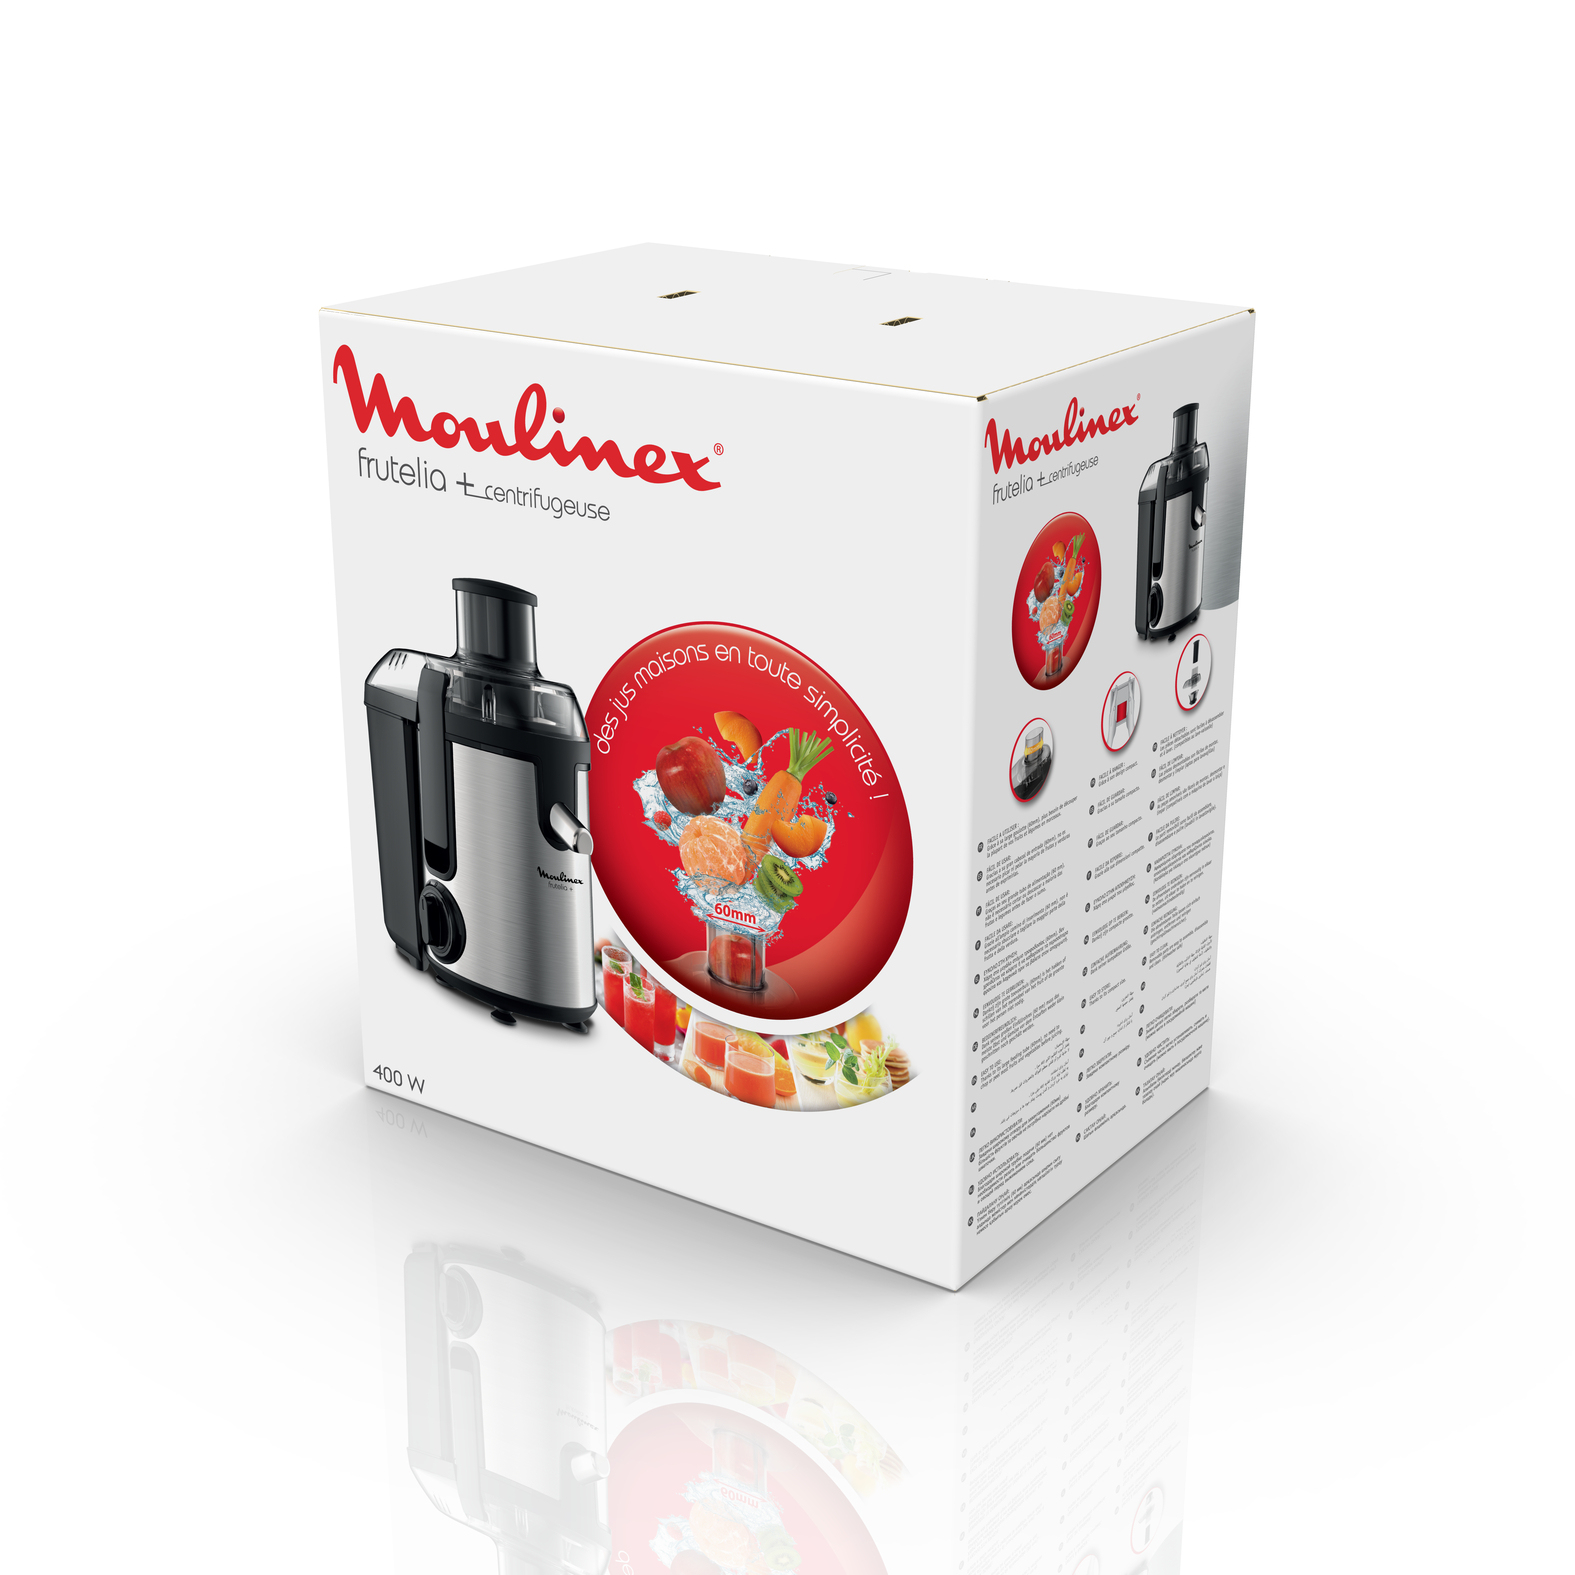 Moulinex juicer express ju420d10